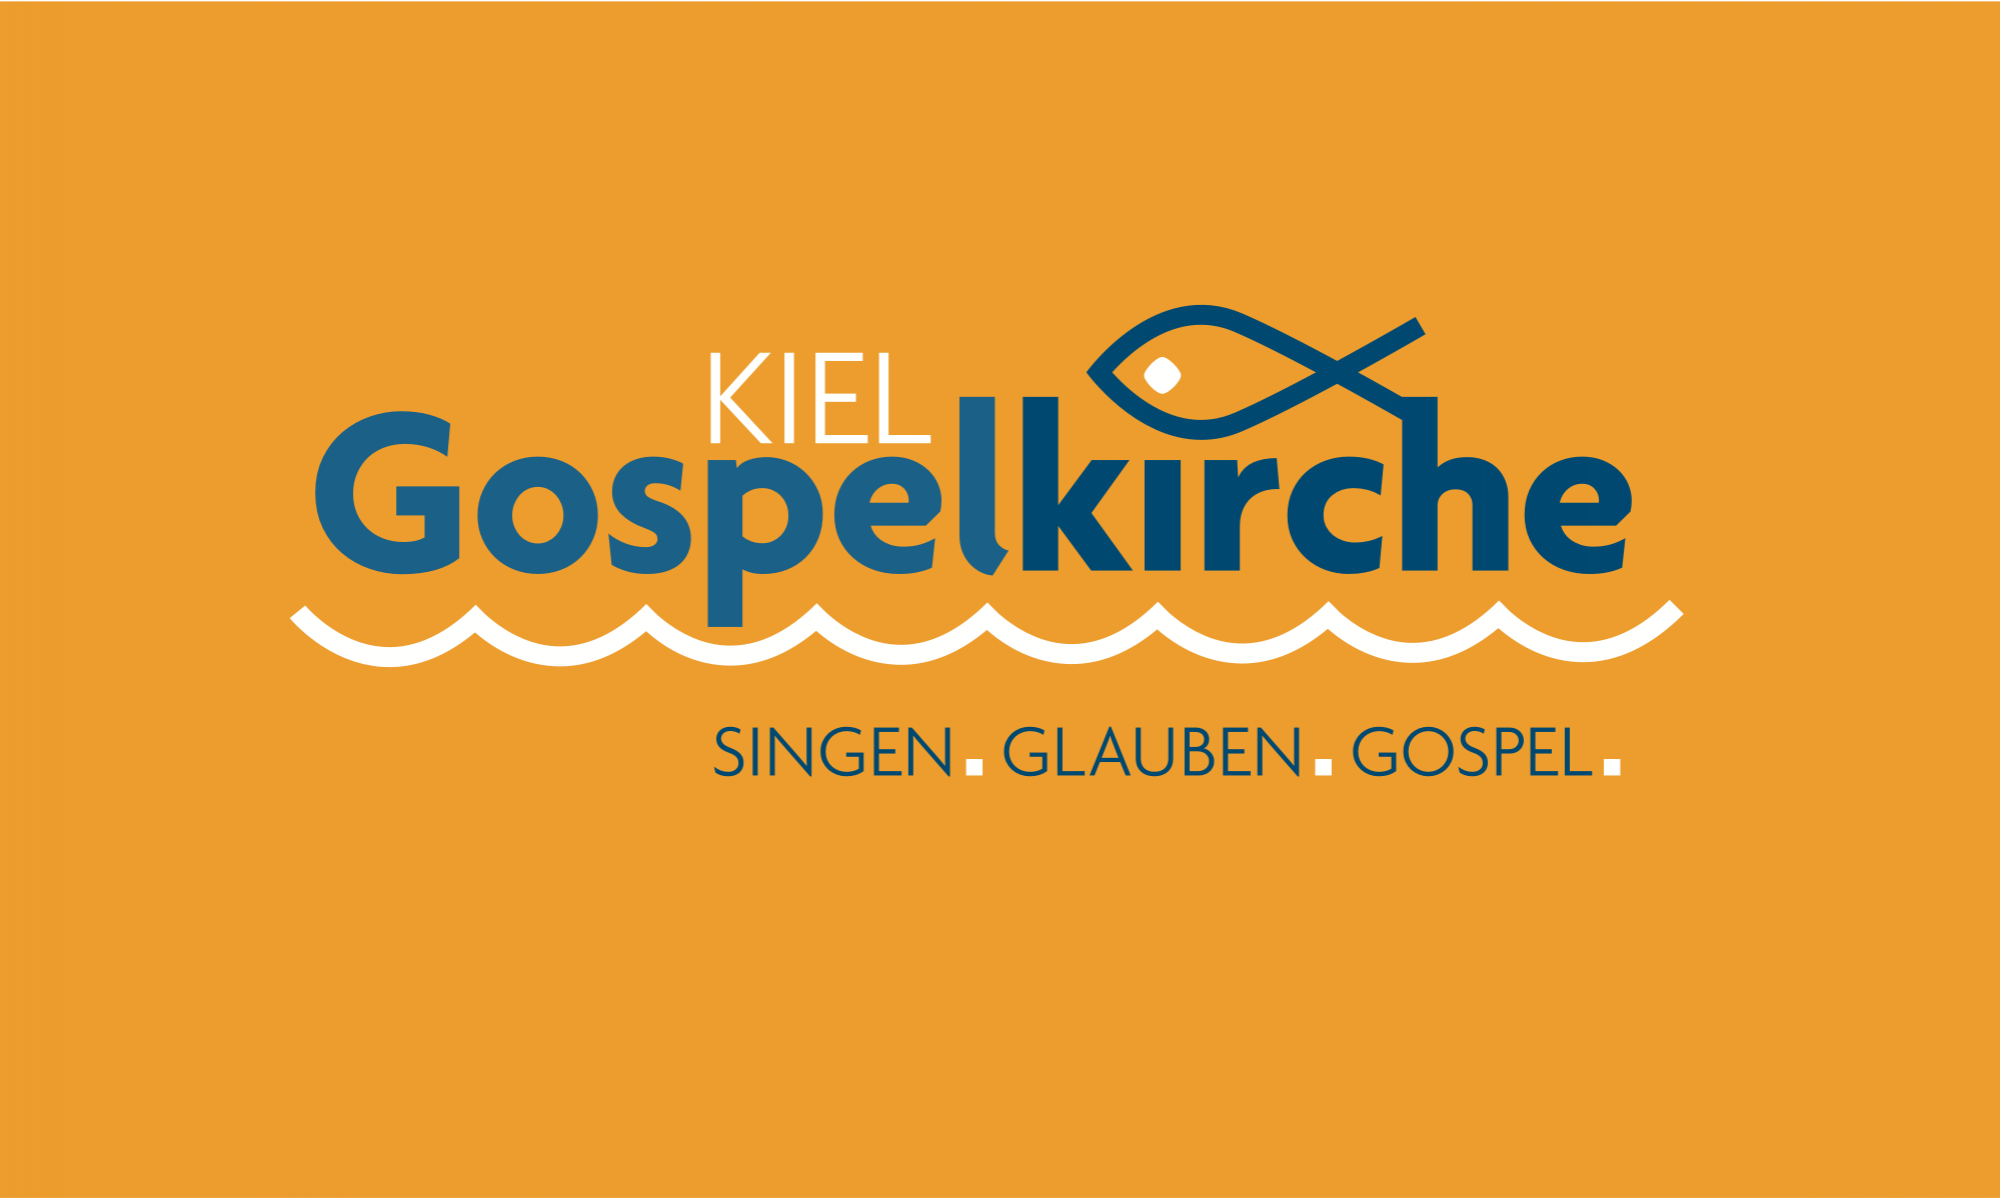 Gospelkirche Kiel